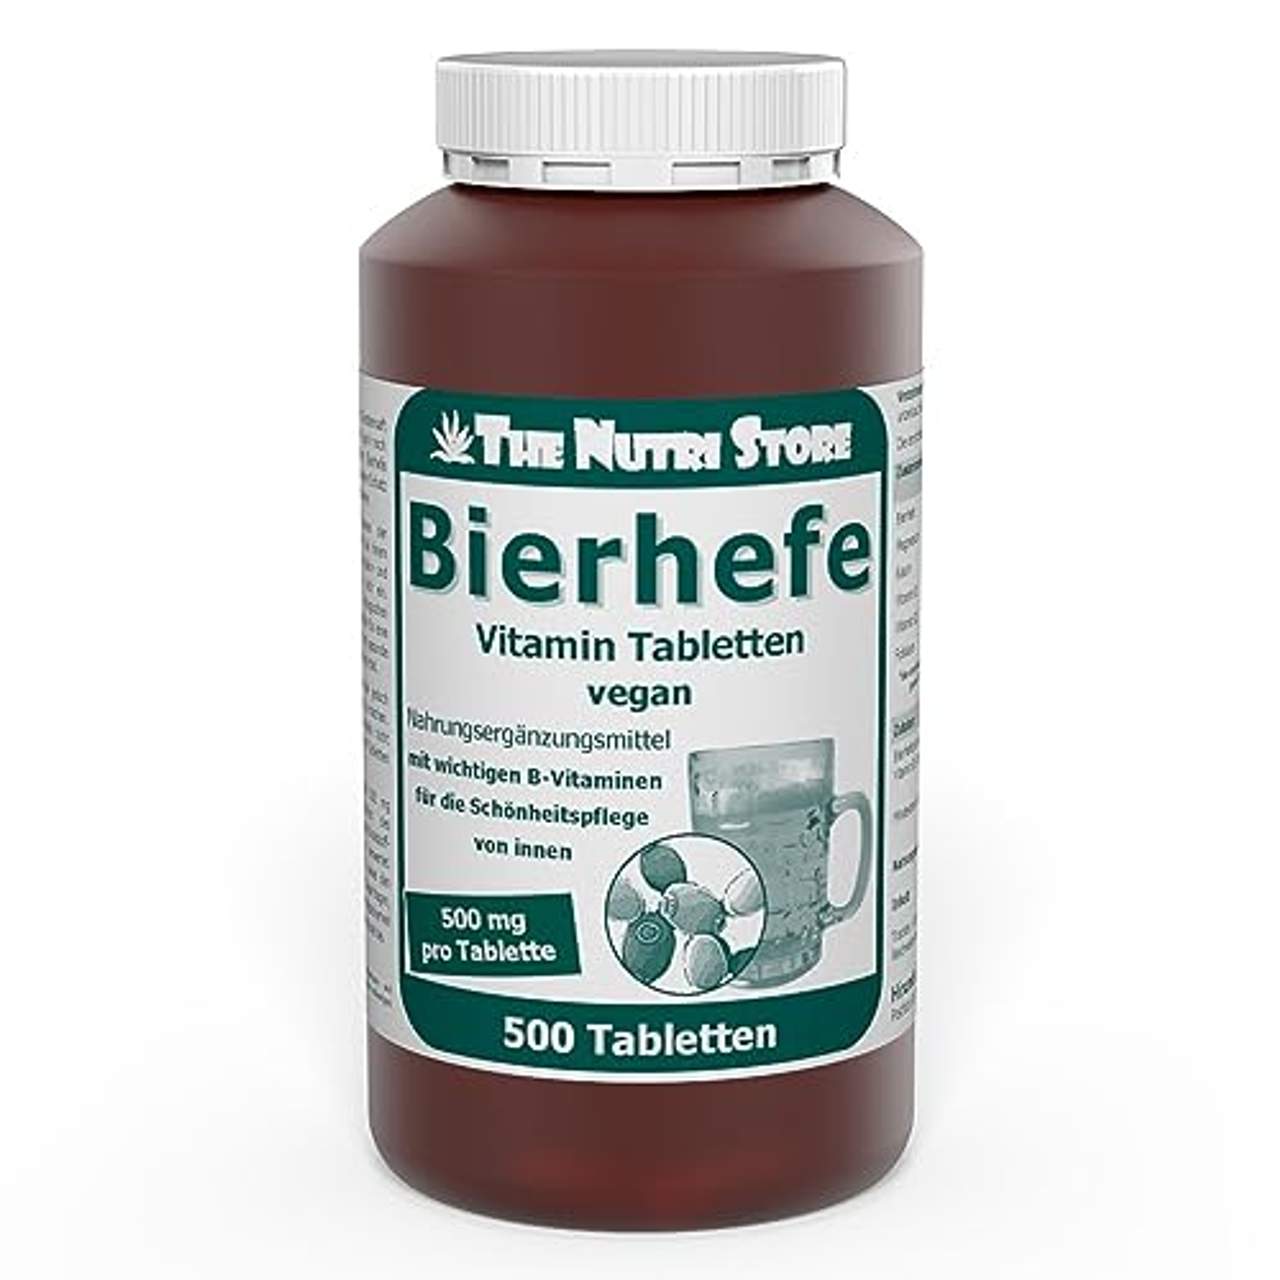 Bierhefe 500 mg Vitamin Tabletten 500 Stk